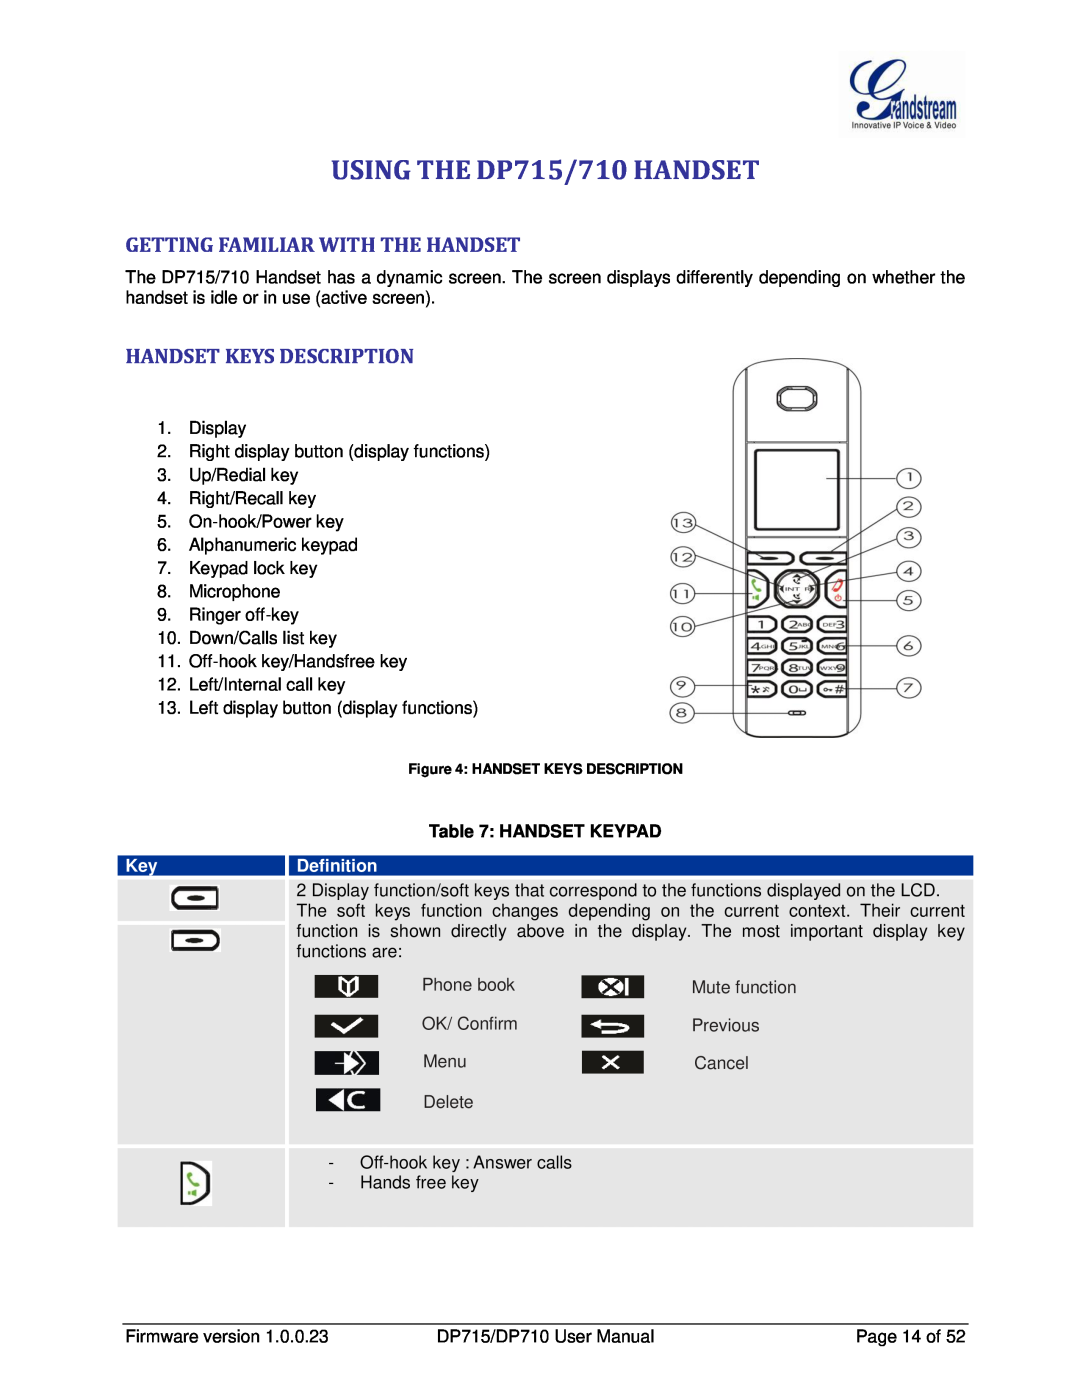 Grandstream Networks DP710 USING THE DP715/710 HANDSET, Getting Familiar With The Handset, Handset Keys Description, Menu 